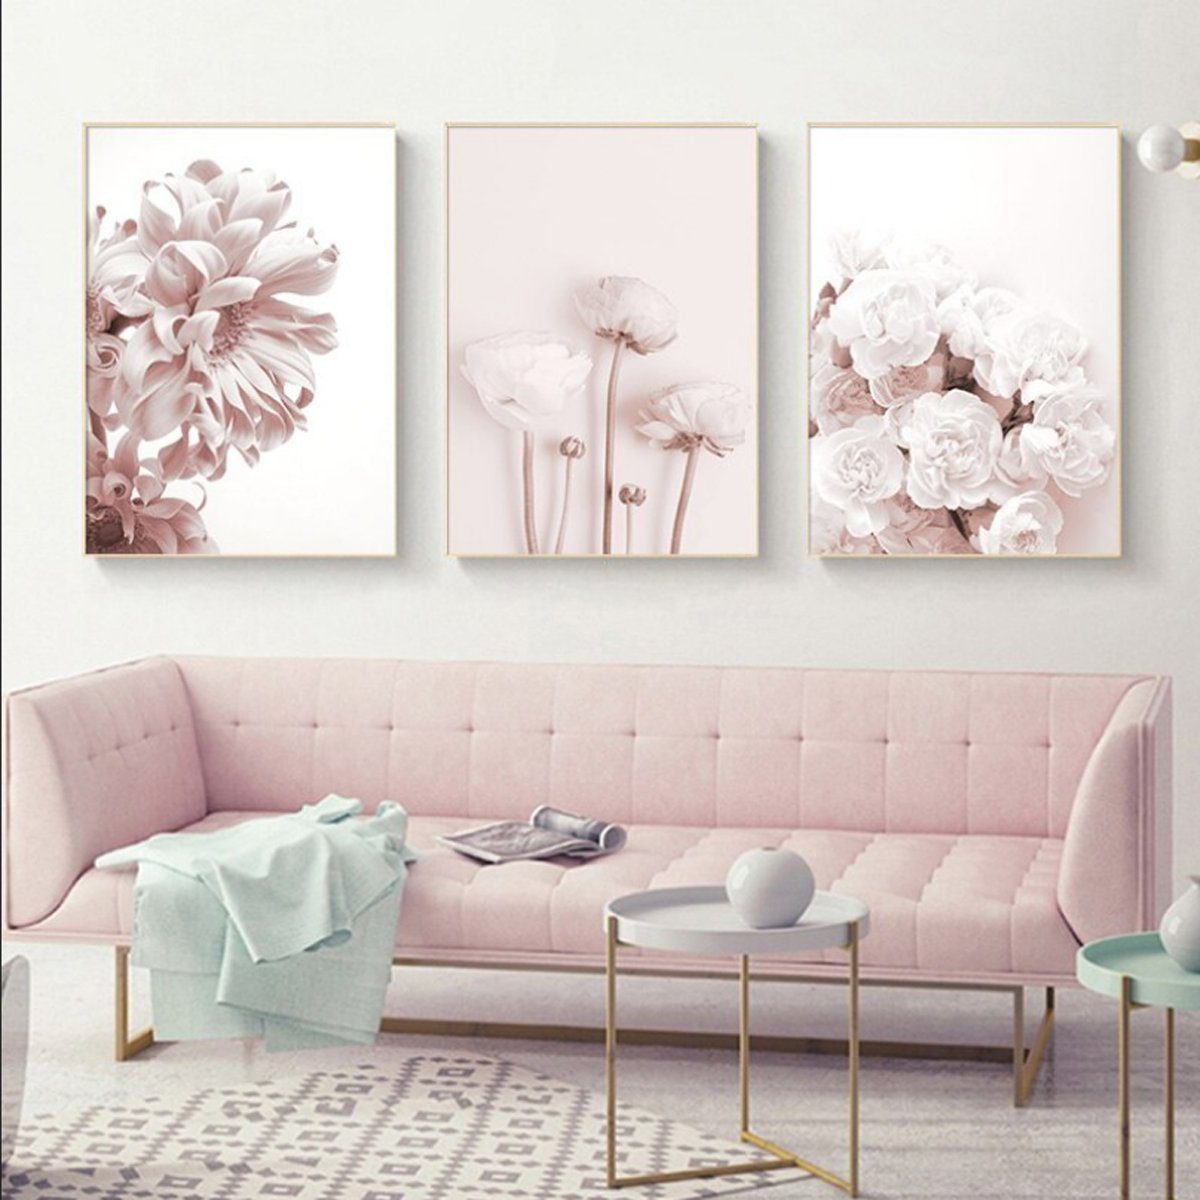 TPFLiving Kunstdruck (OHNE RAHMEN) Poster - Leinwand - Wandbild, Rosa Blumen und Blüten - Wanddeko Wohnzimmer - (13 verschiedene Größen zur Auswahl - Auch im günstigen 3-er Set), Farben: Pink und Weiß - Größe: 40x60cm